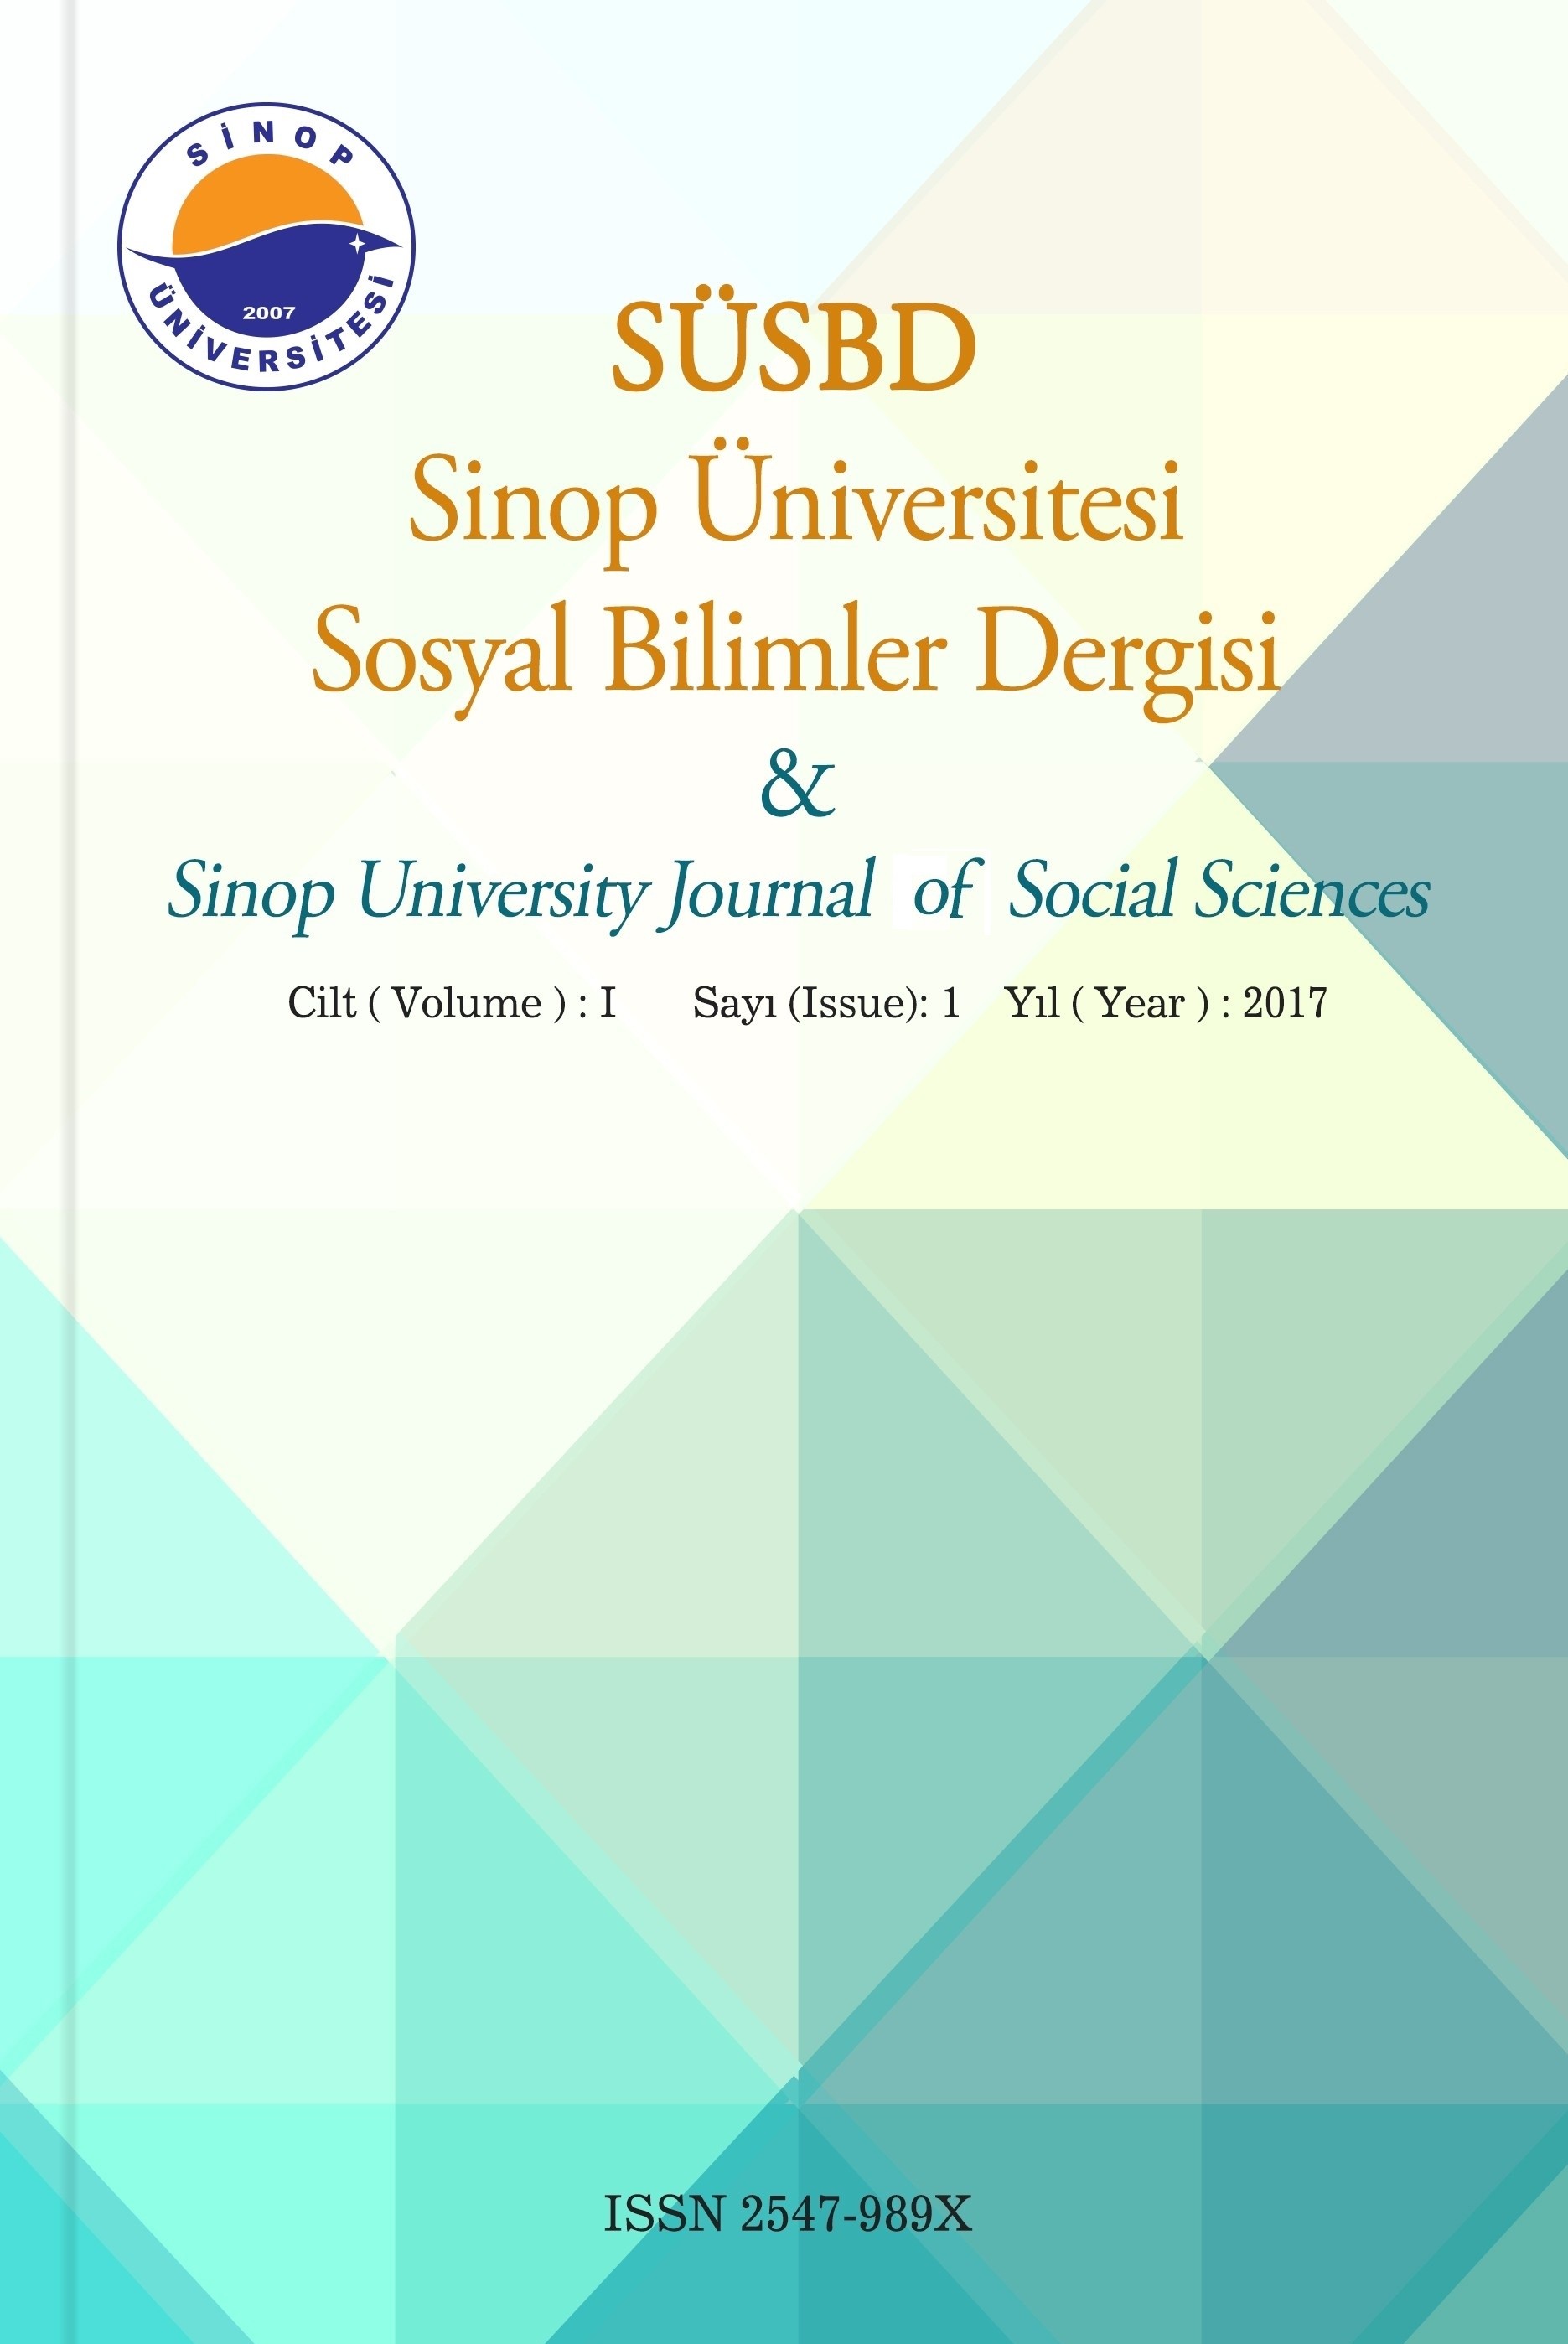 Sinop Üniversitesi Sosyal Bilimler Dergisi-Cover